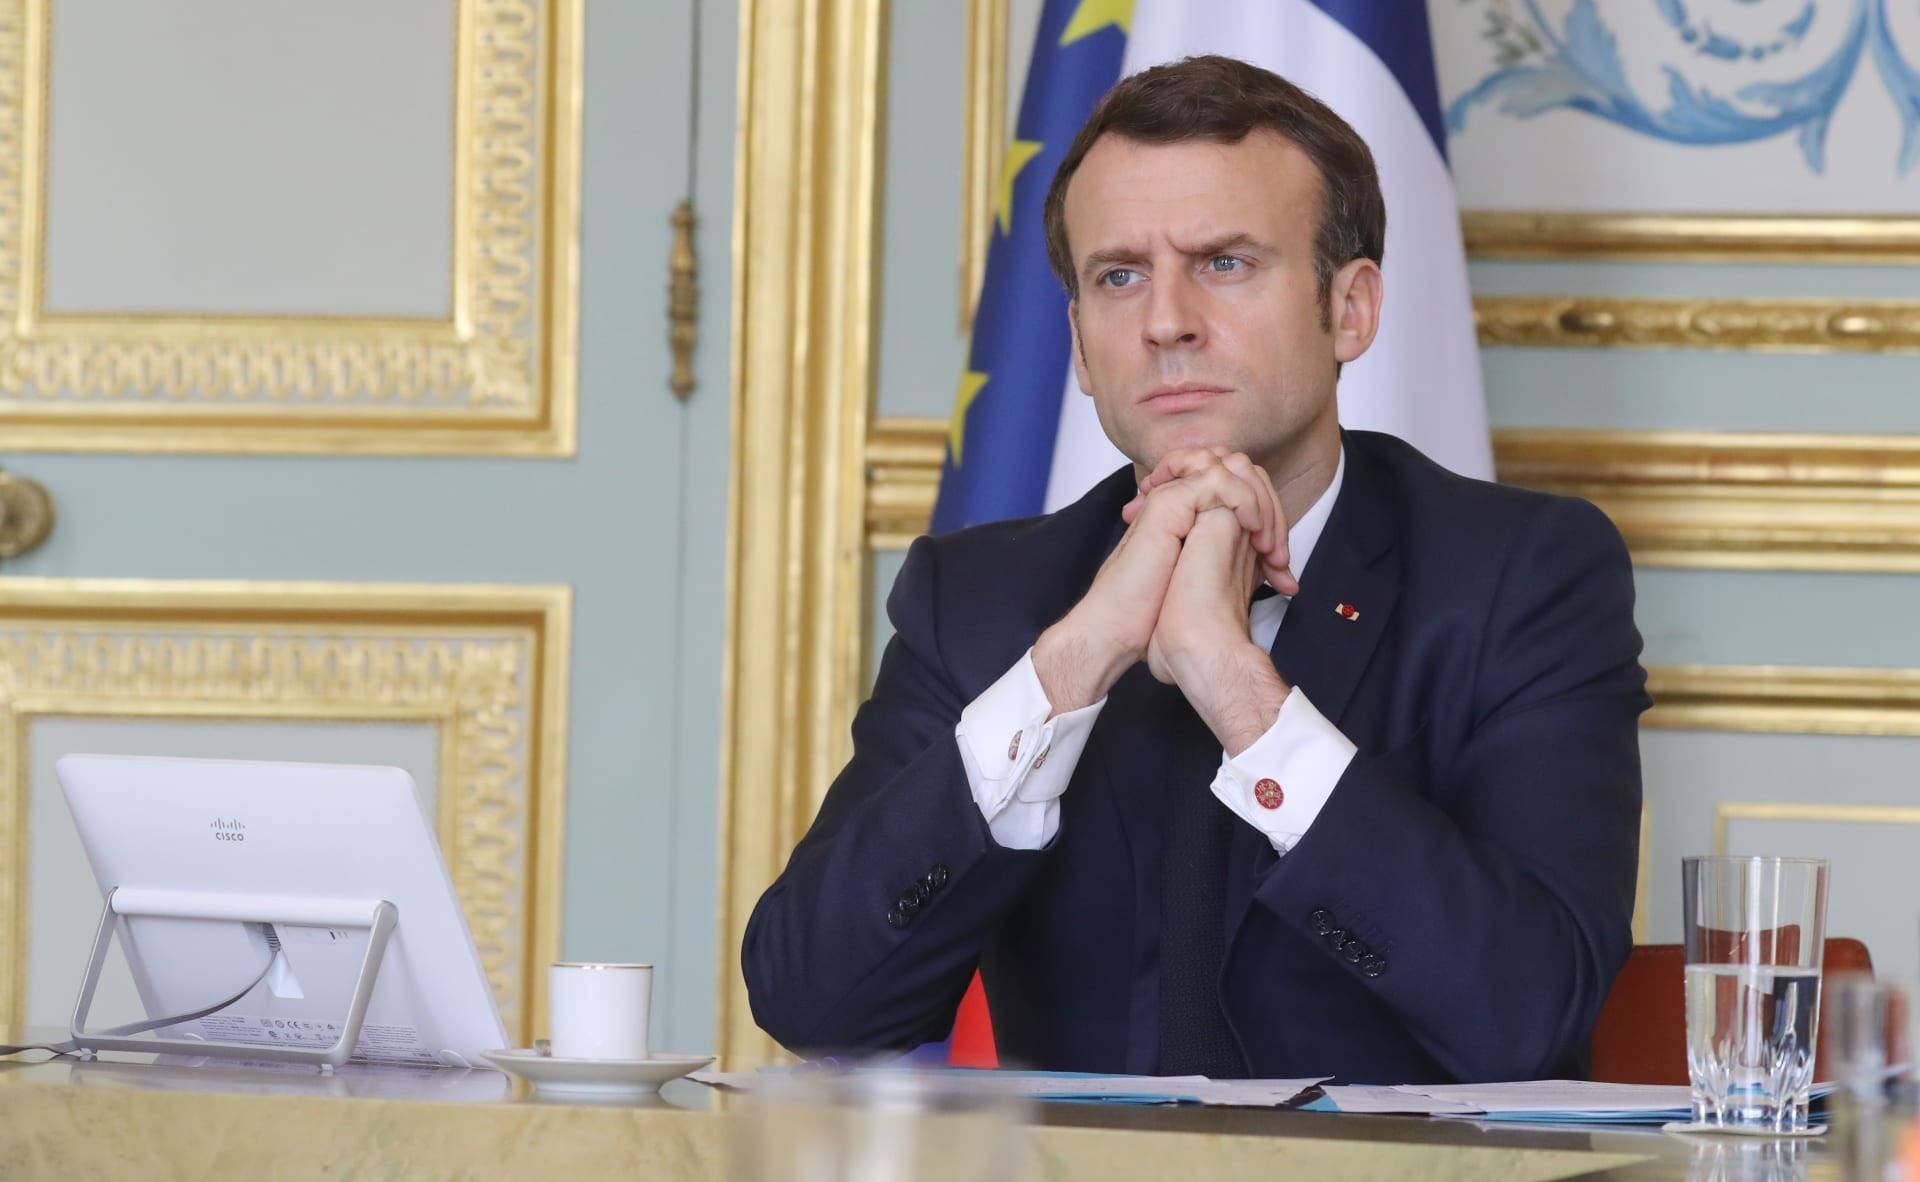 الرئيس الفرنسي يدعو قطر إلى "مواصلة" الإصلاحات